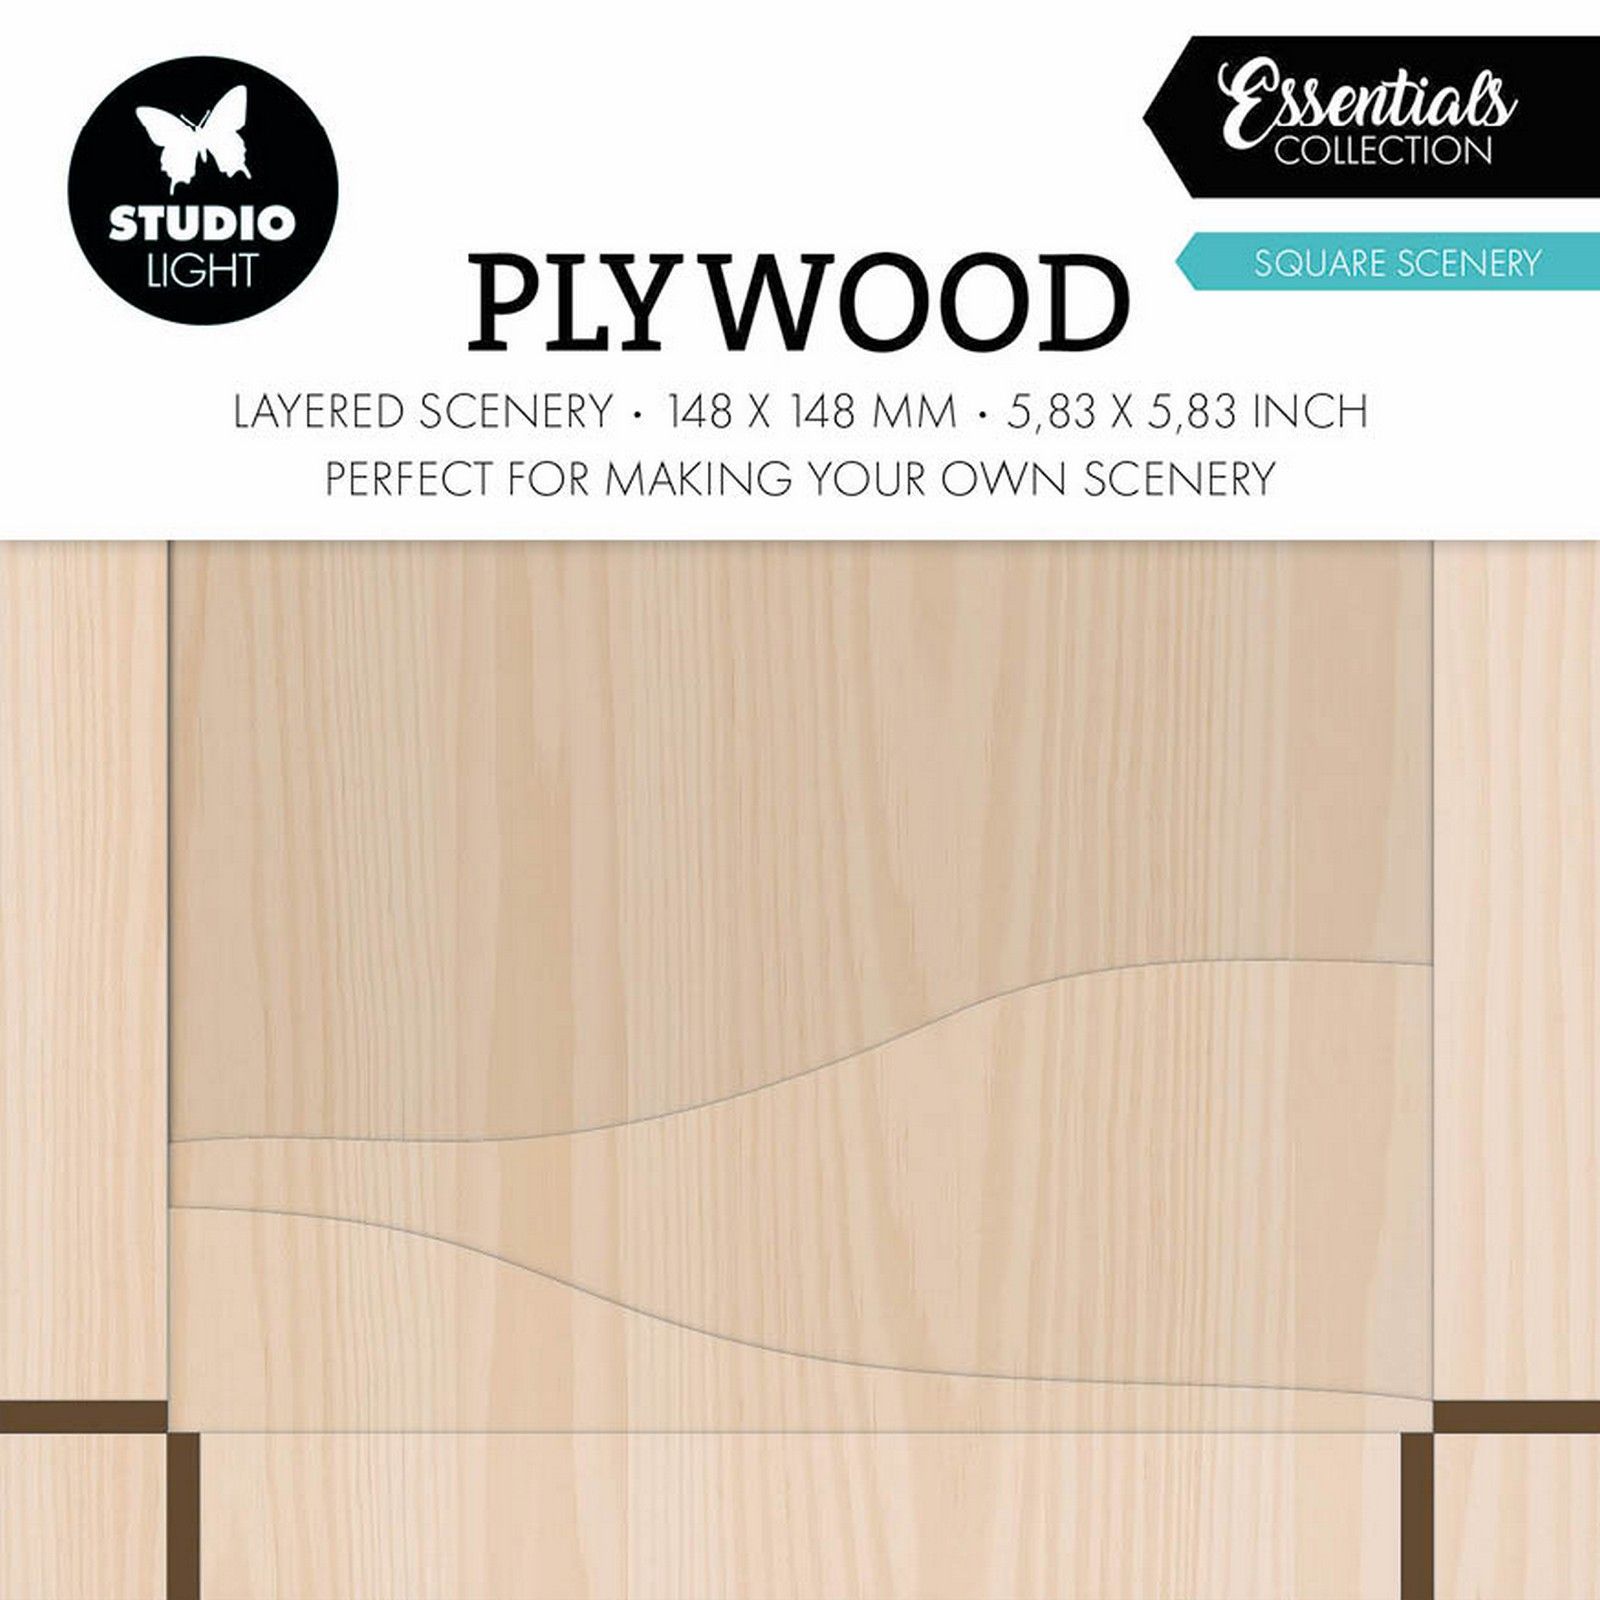 Studio Light • Essentials Plywood Square scenery 